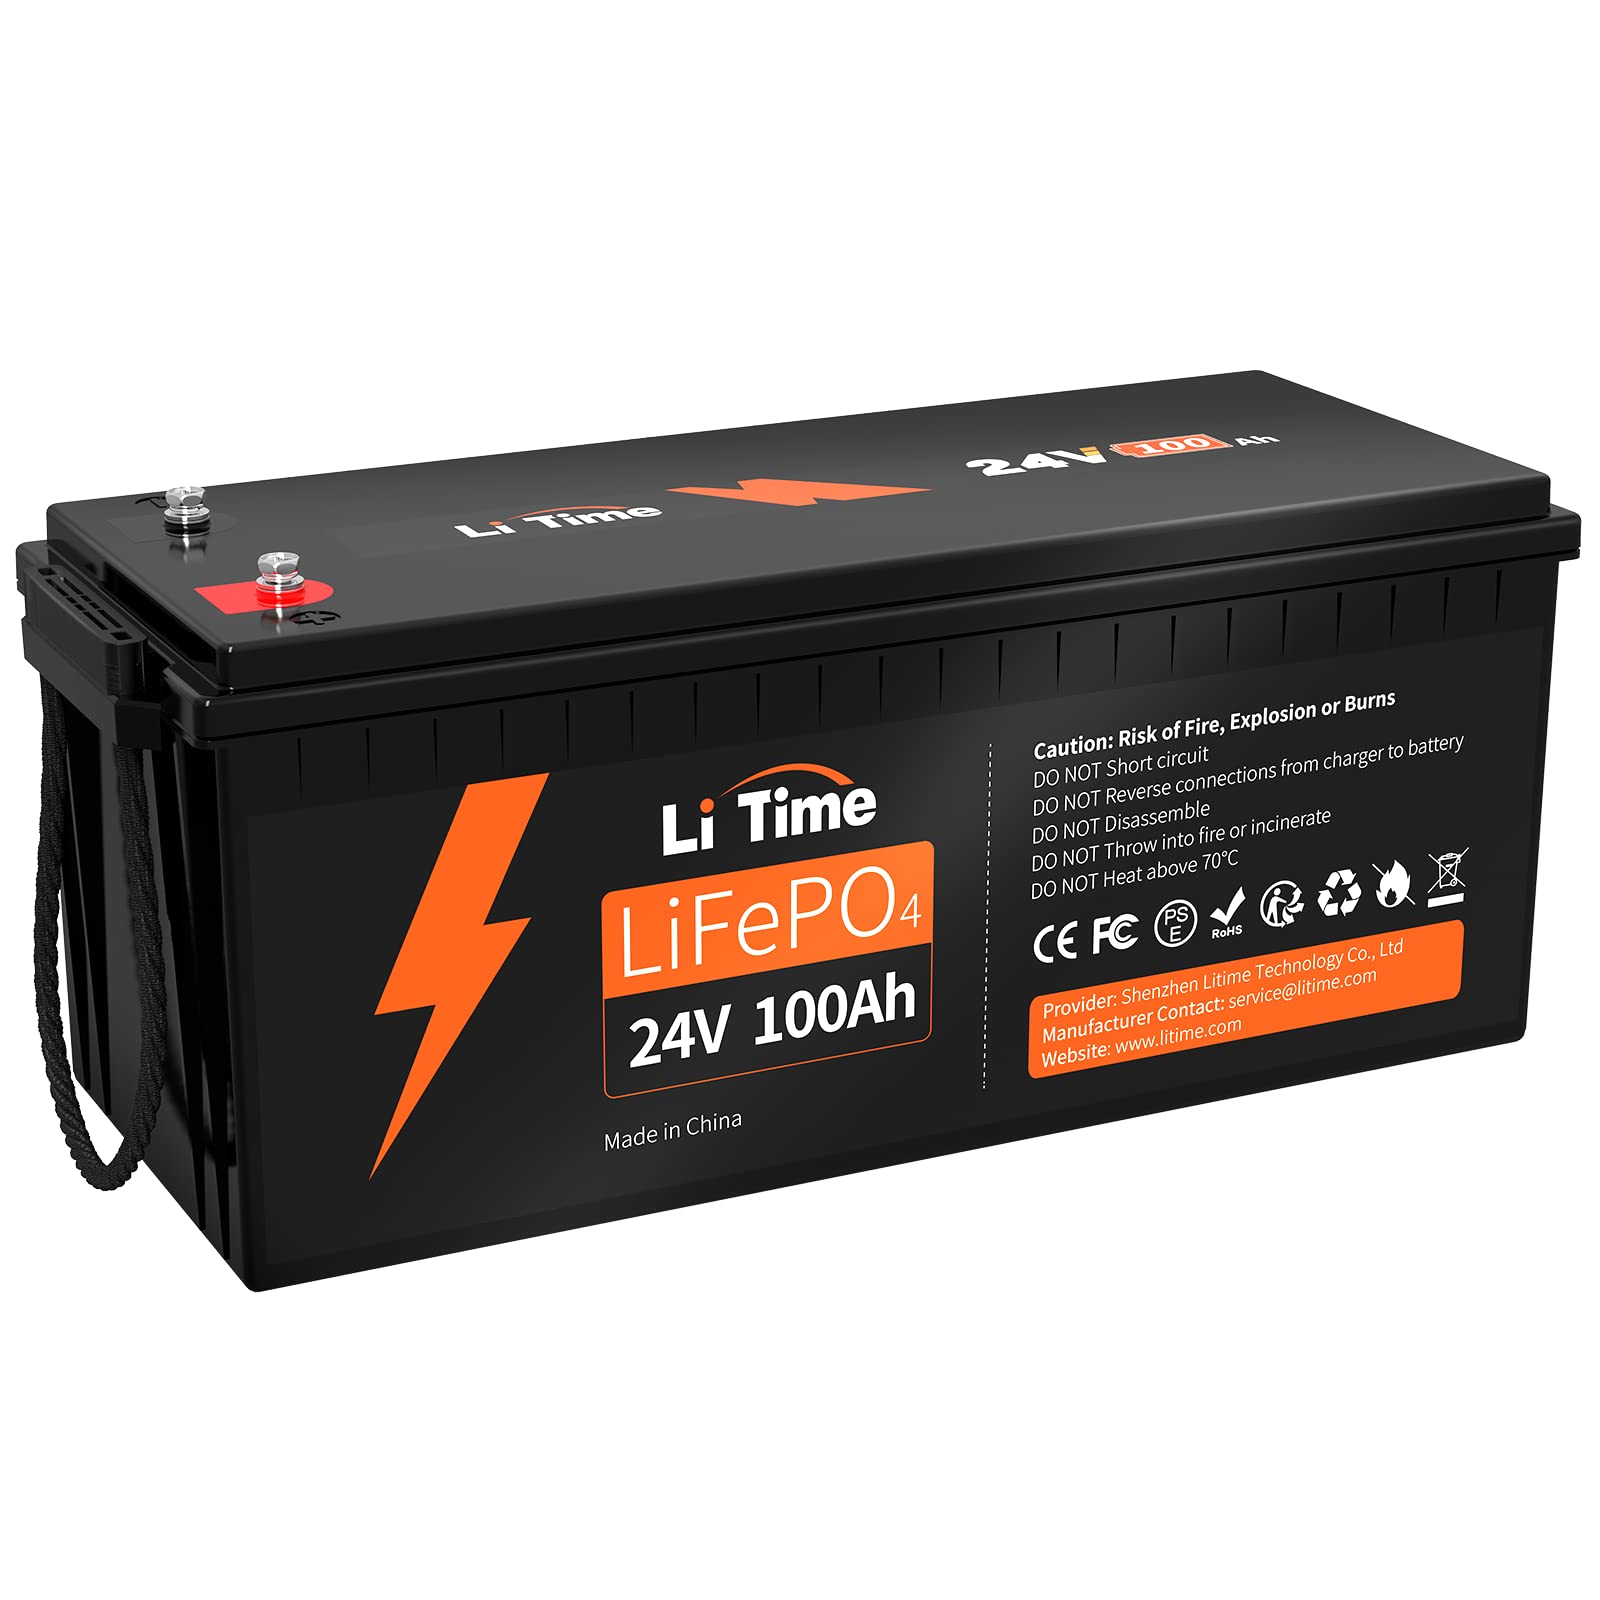 LiTime LiFePO4 24V 100Ah Lithium Batterie Max. 2560W Leistung und Max. 15000 Zyklen, 10 Jahre Lebensdauer, Ideal Ersatz AGM-Batterie, Perfekt für Wohnmobil, Marine, Solaranlage, Off-Grid von Litime